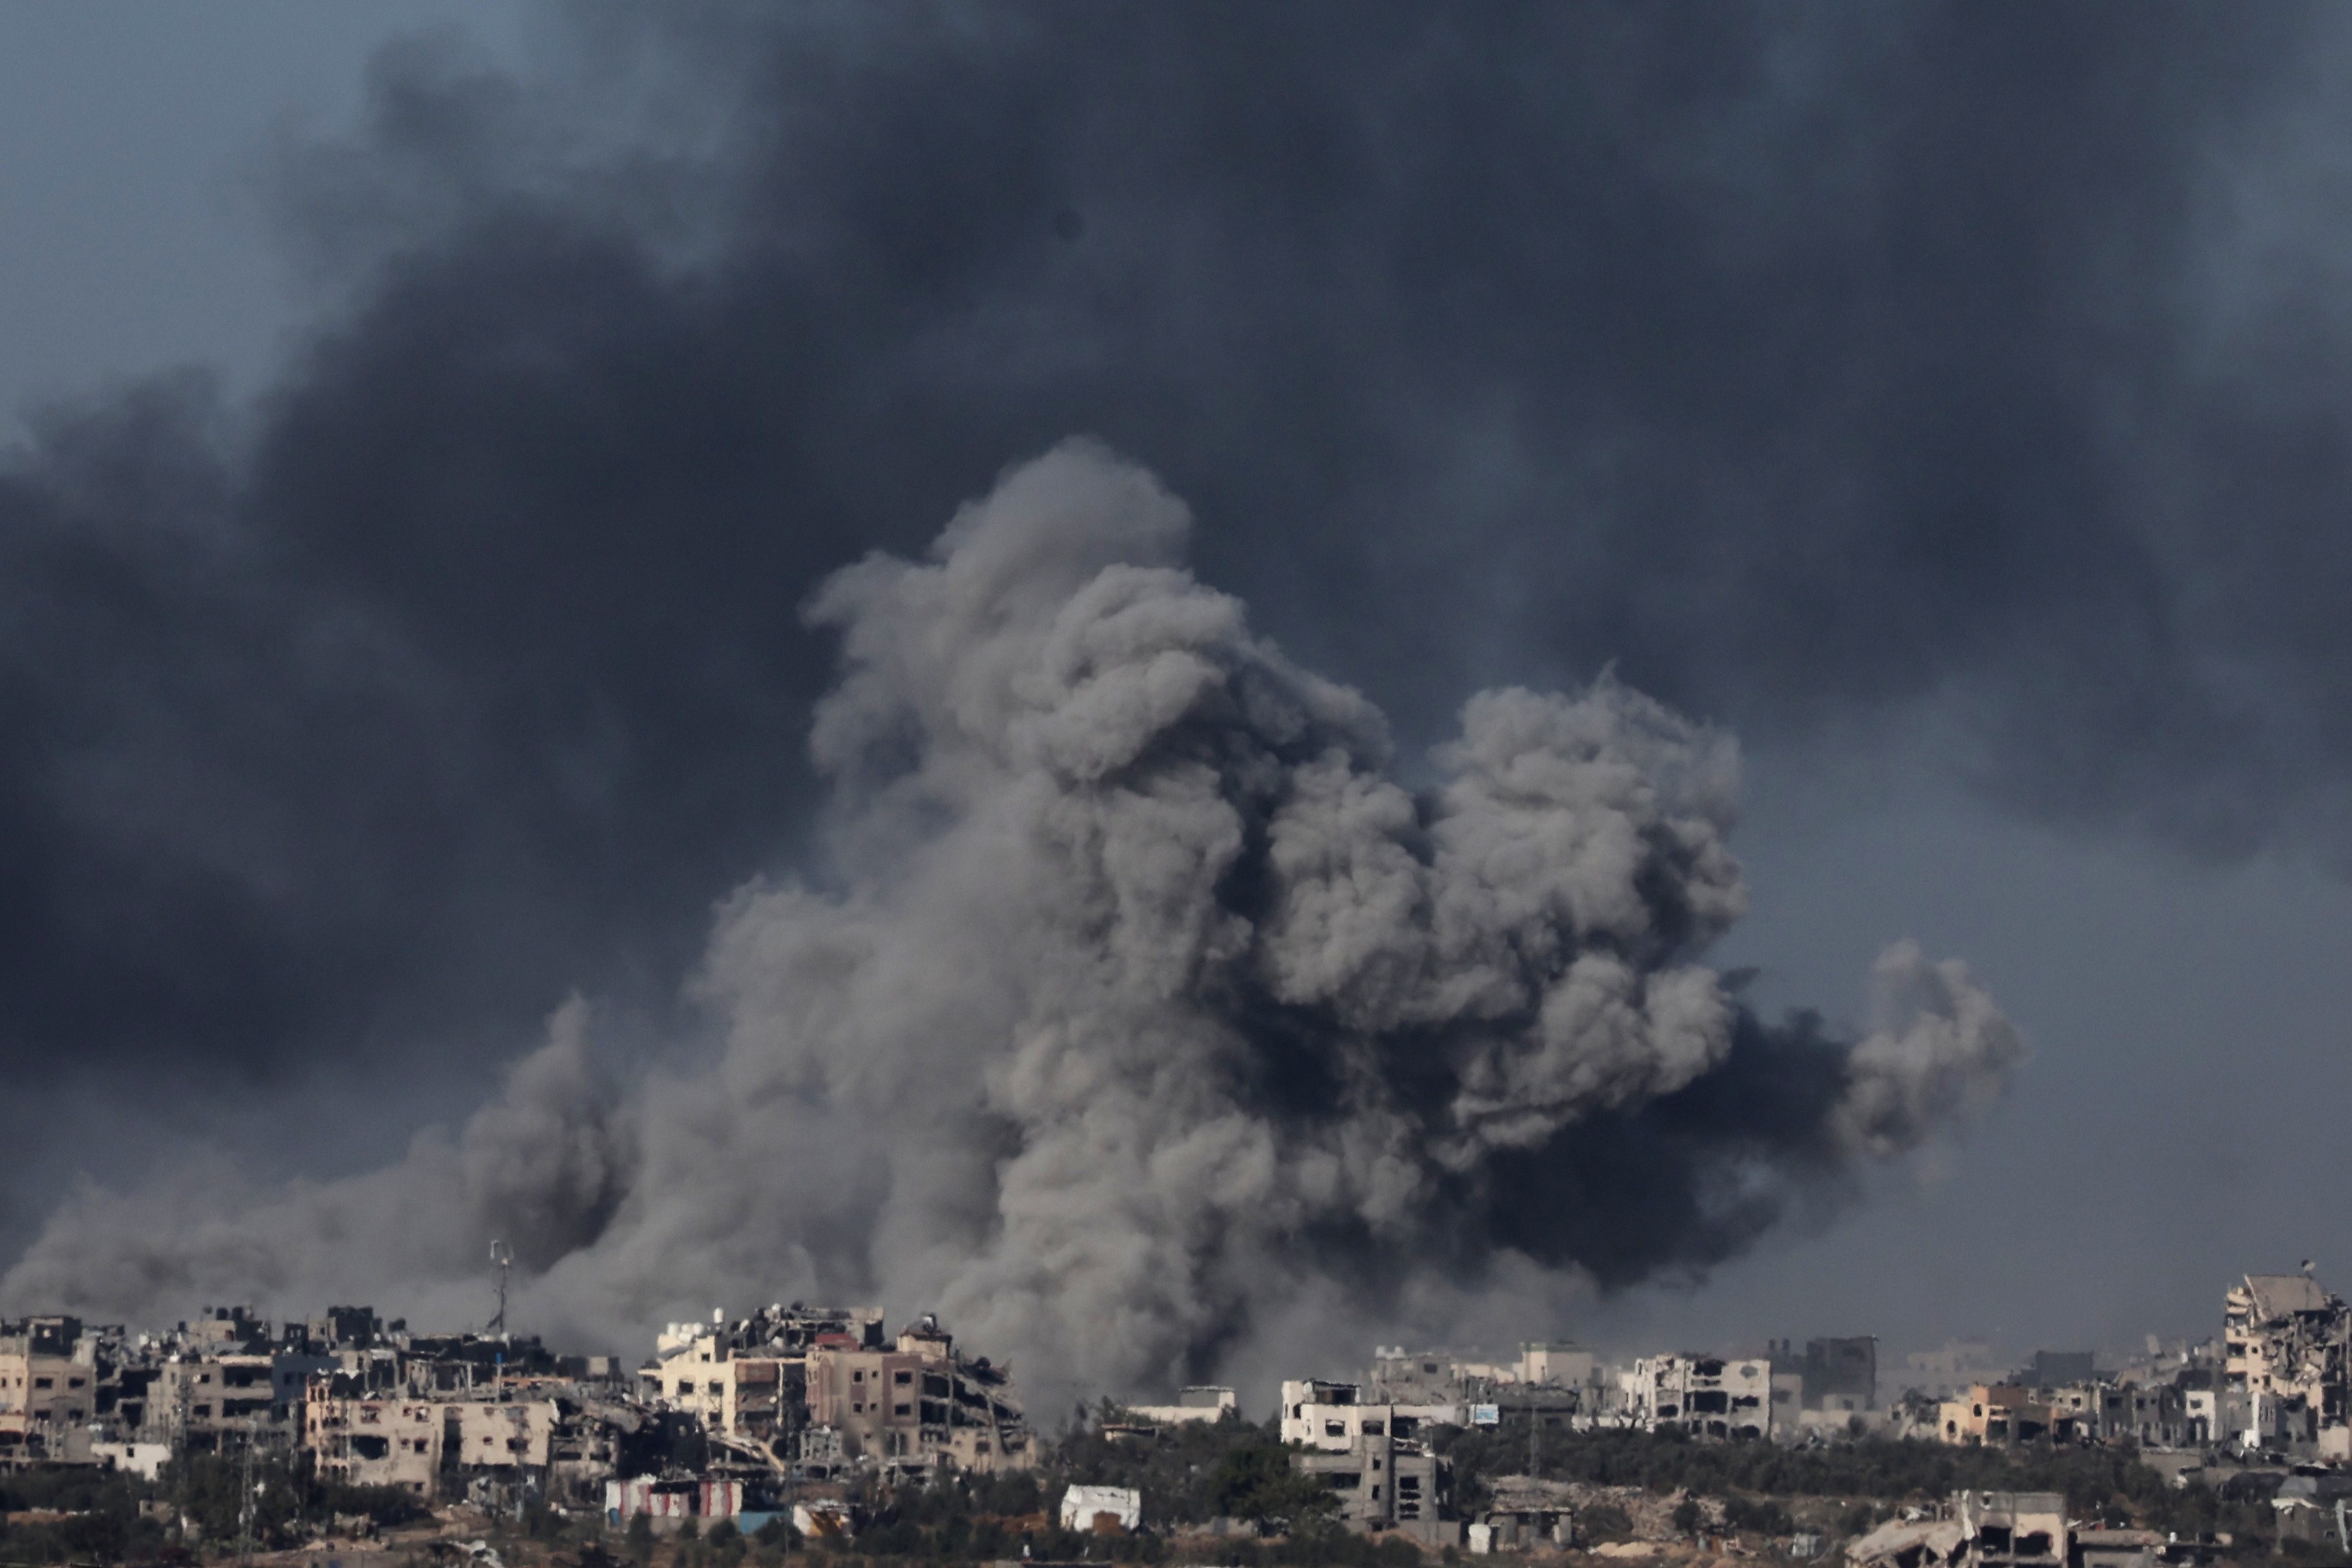 Las operaciones del ejército de Israel al sur de Gaza: "Ahora estamos luchando cuerpo a cuerpo"